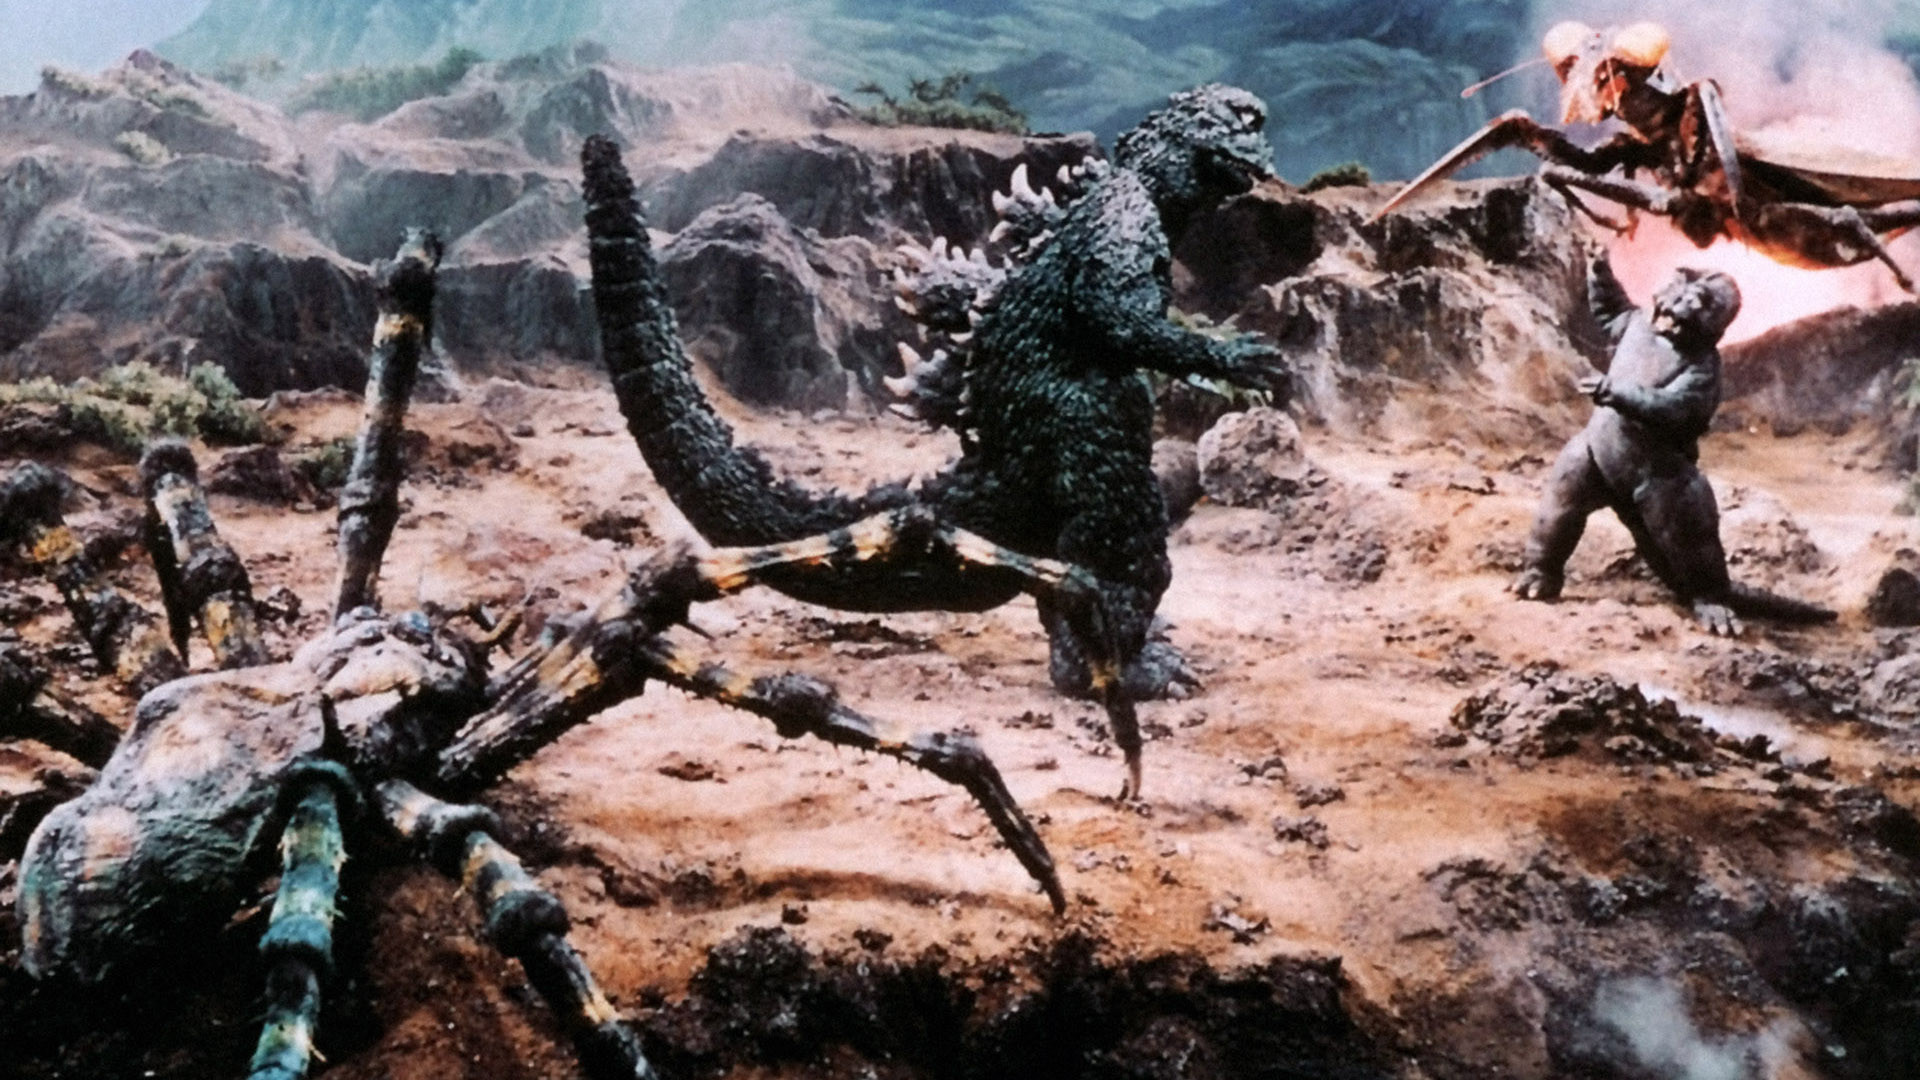 1920x1080 Image - Son-of-Godzilla-Wallpapers-2.jpg | Gojipedia | FANDOM powered by  Wikia